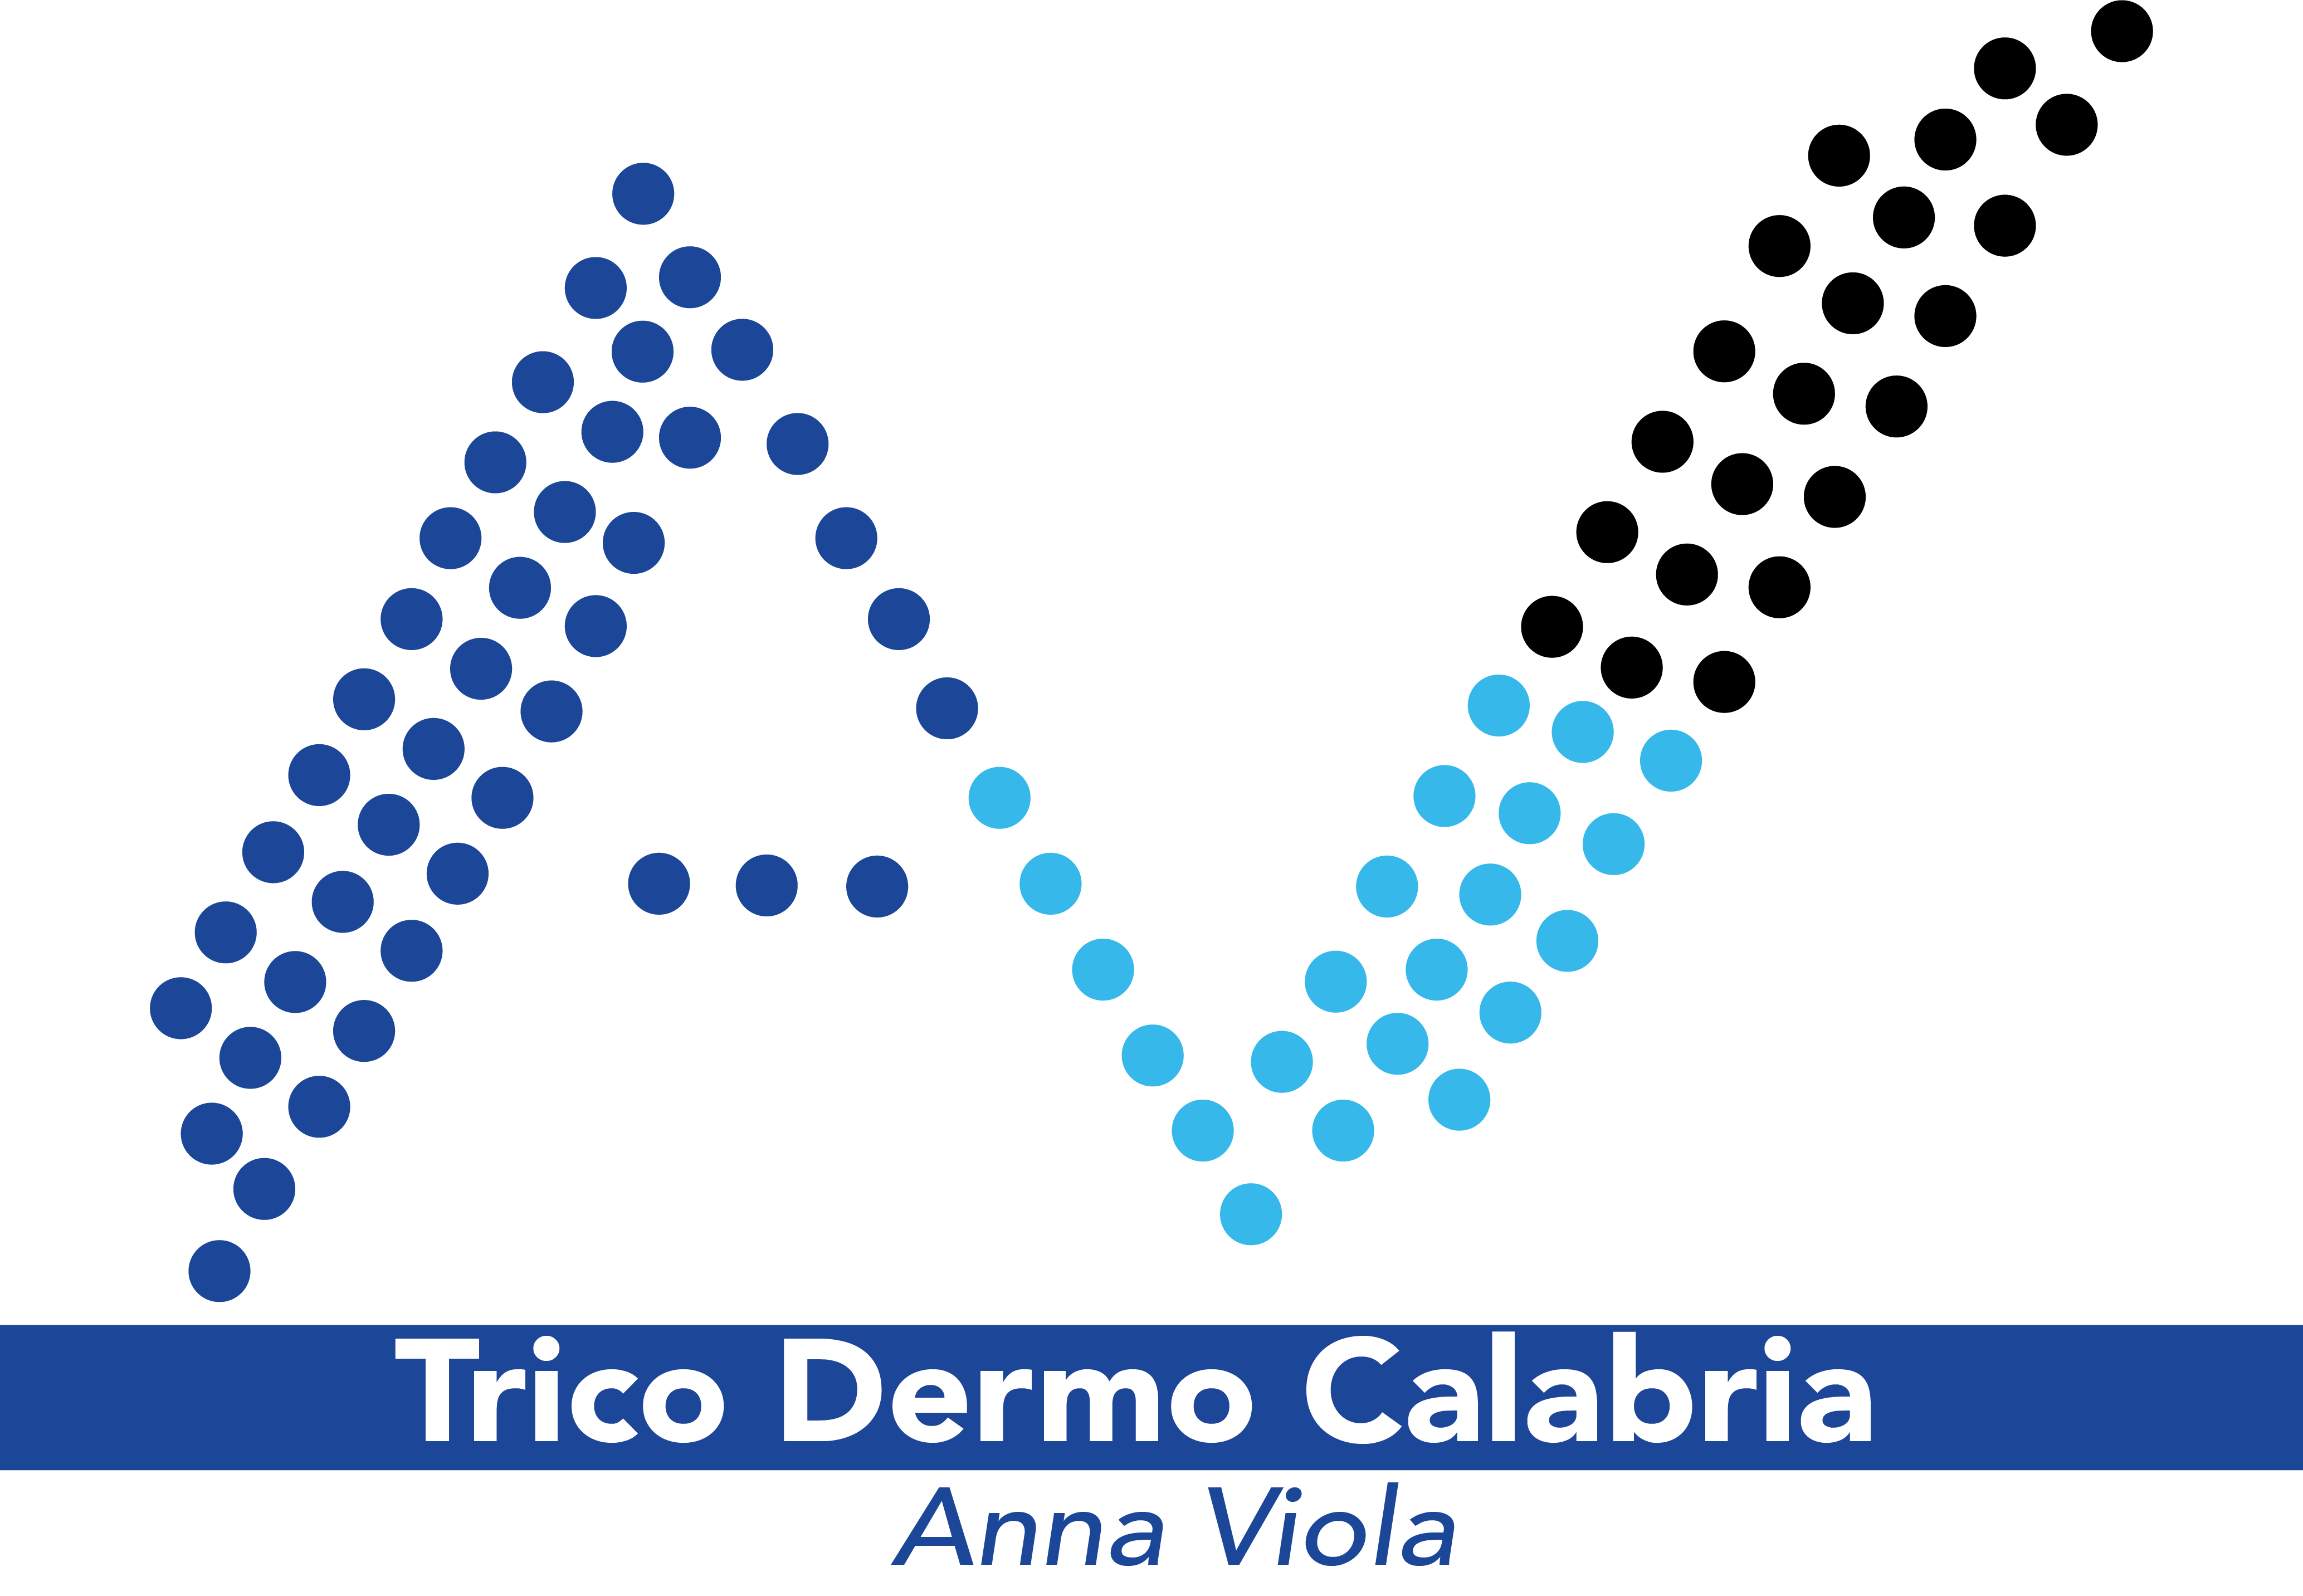 www.tricodermocalabria.it